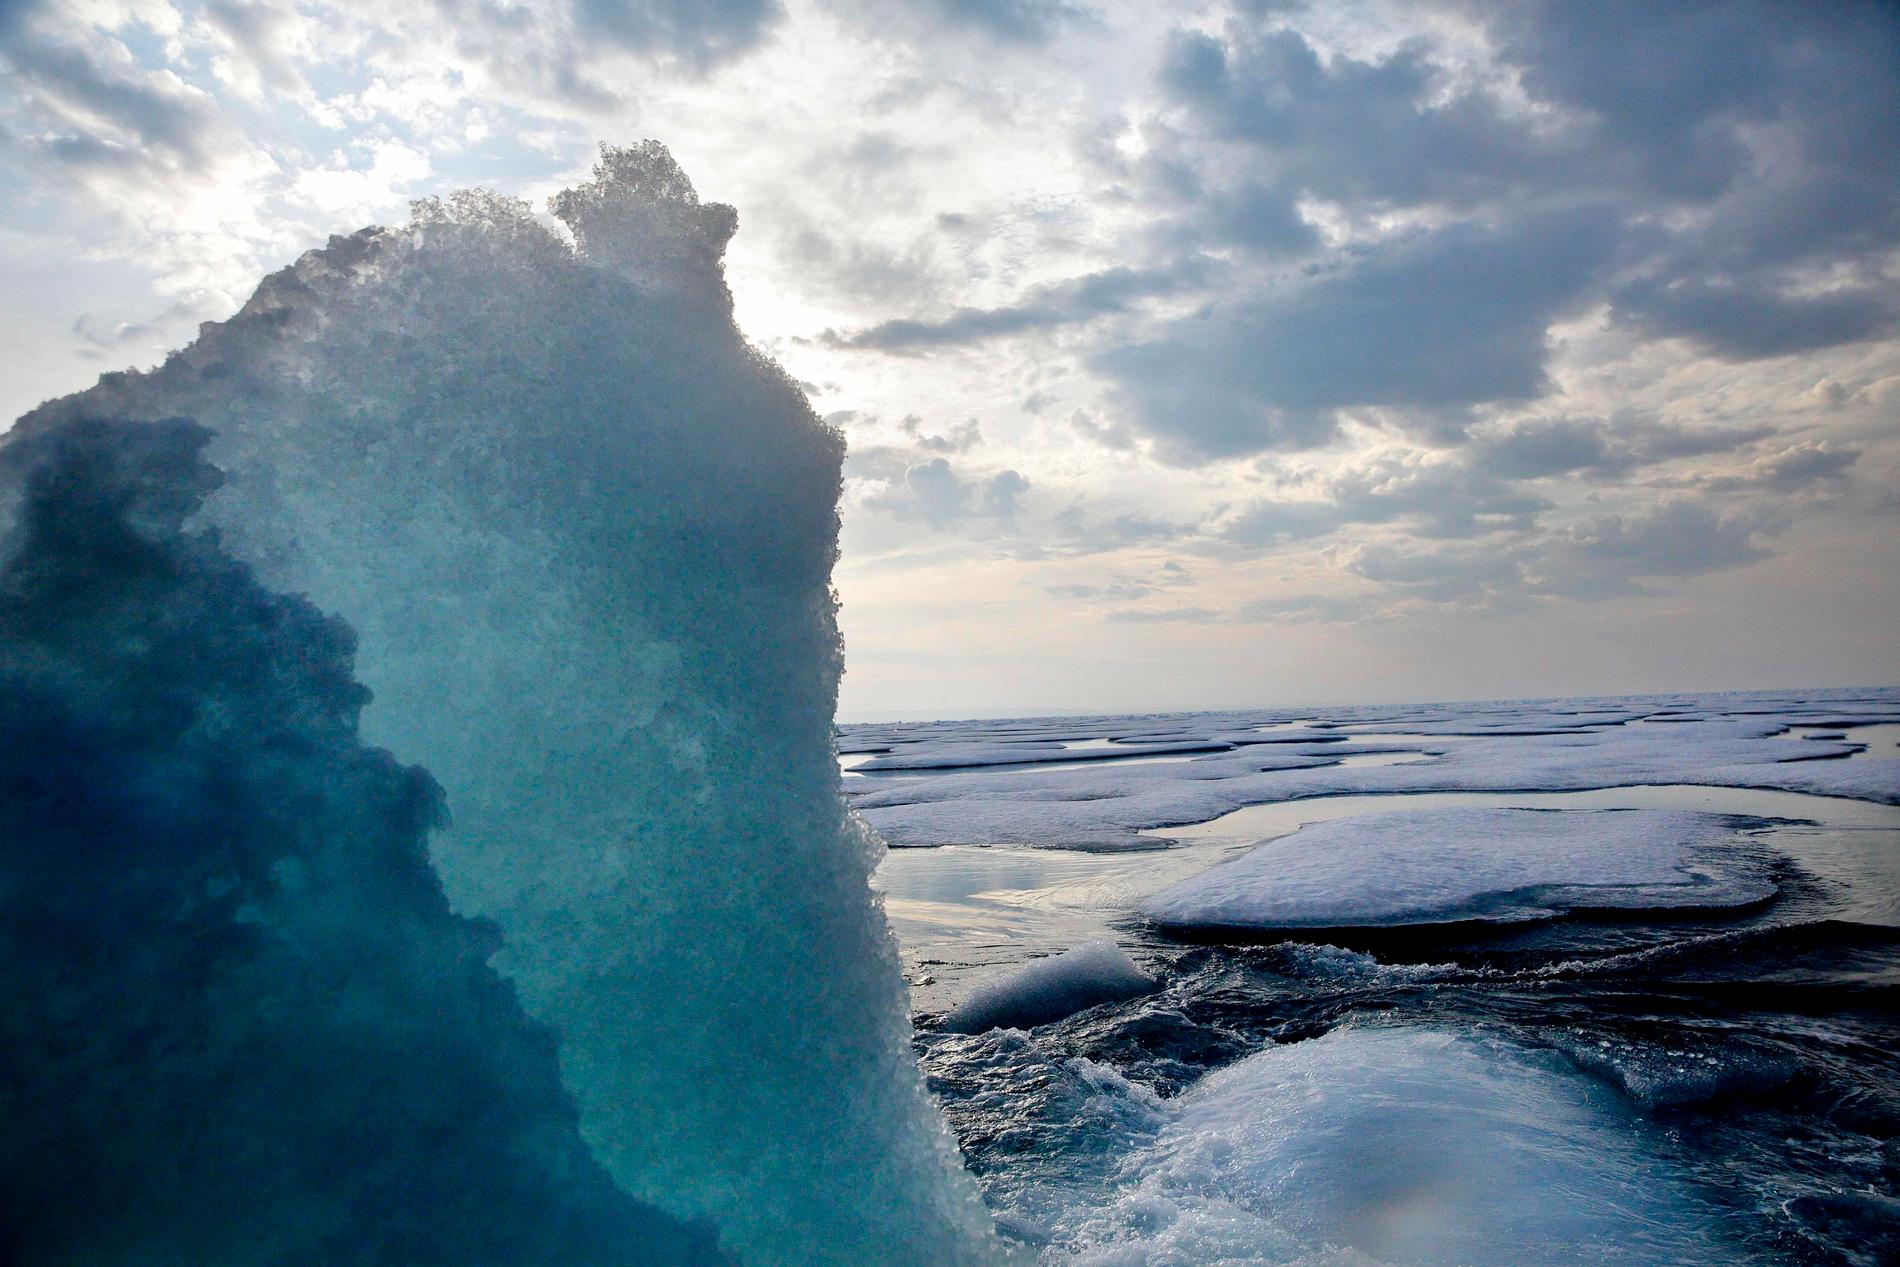 Kylan från Arktis anländer till Sverige och det väntas bli riktigt kallt i till lucia. Bilden från Nordvästpassagen.